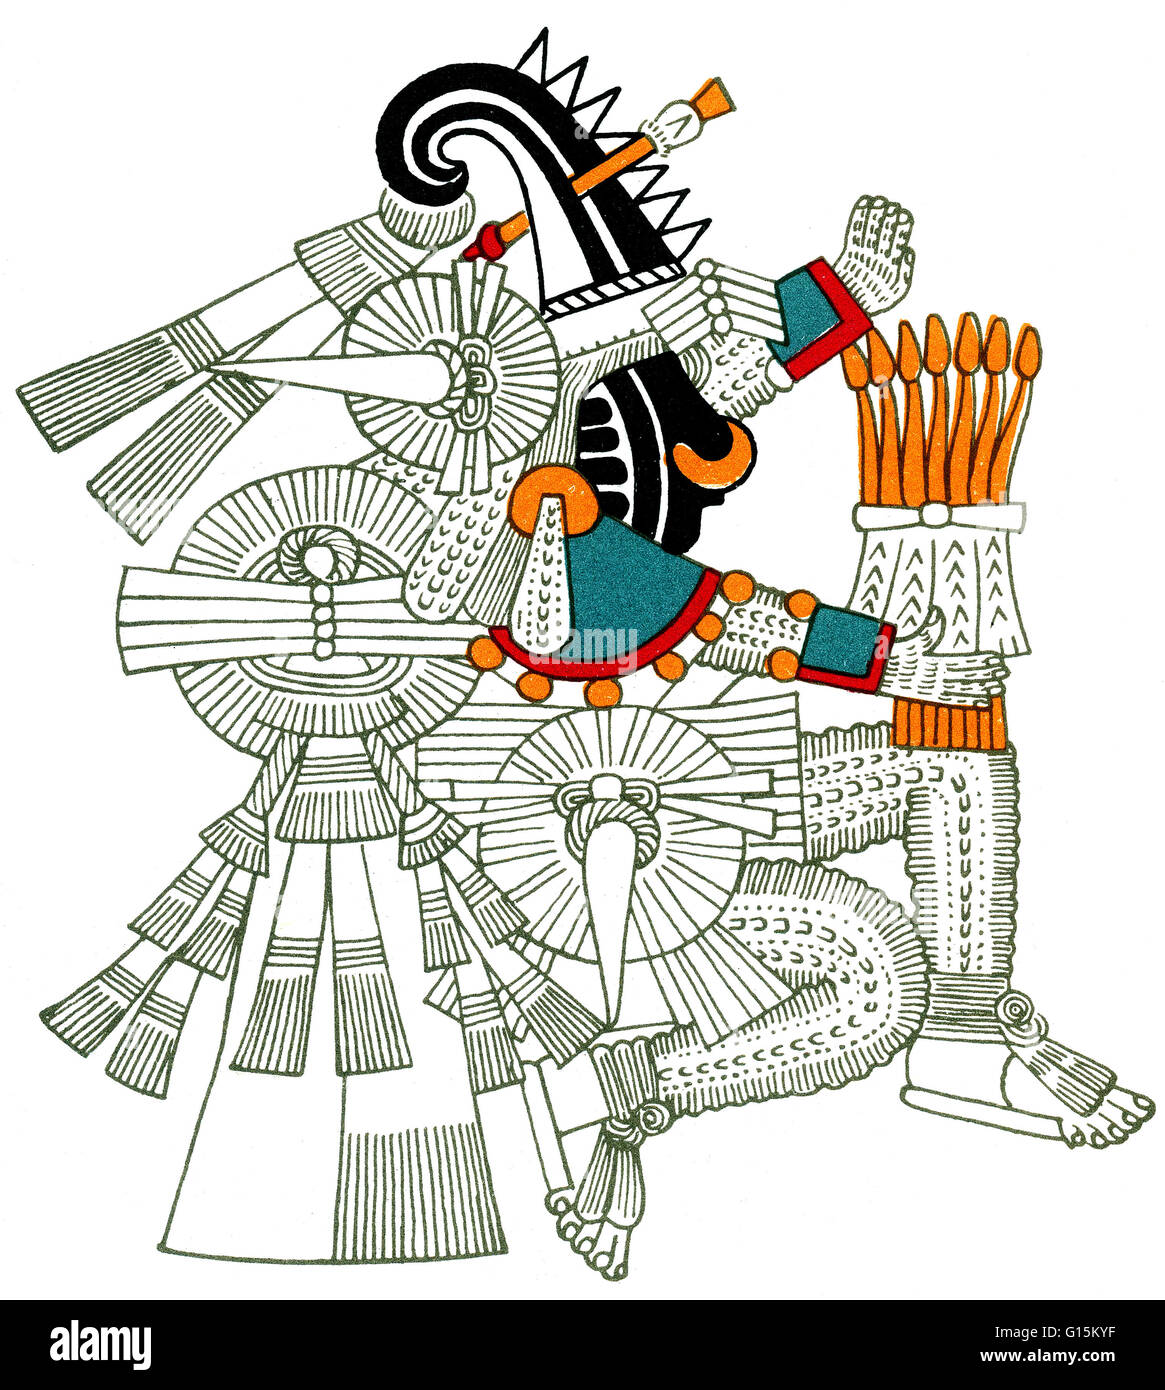 Iztlacoliuhqui, du Codex Borbonicus. Dans la mythologie aztèque, Itztlacoliuhqui est le dieu du gel, le froid des choses dures, et le châtiment de la misère humaine. Il était auparavant connu sous le nom de Tlahuizcalpantecuhtli, qui a tiré une flèche sur le dieu soleil, Tonatiuh. La flèche mis Banque D'Images